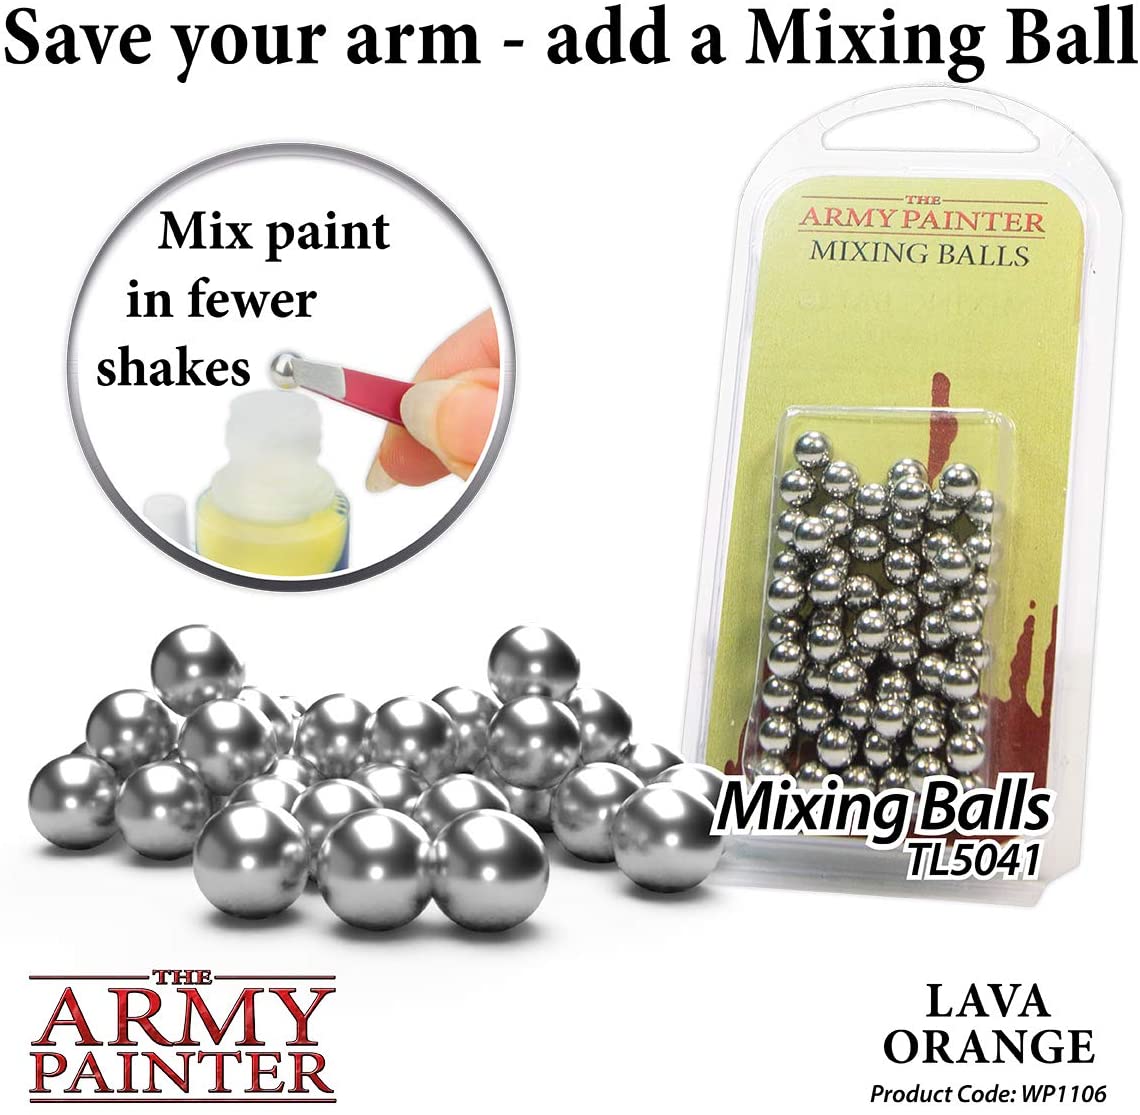 The Army Painter - Warpaints: Lava Orange (18ml/0.6oz)